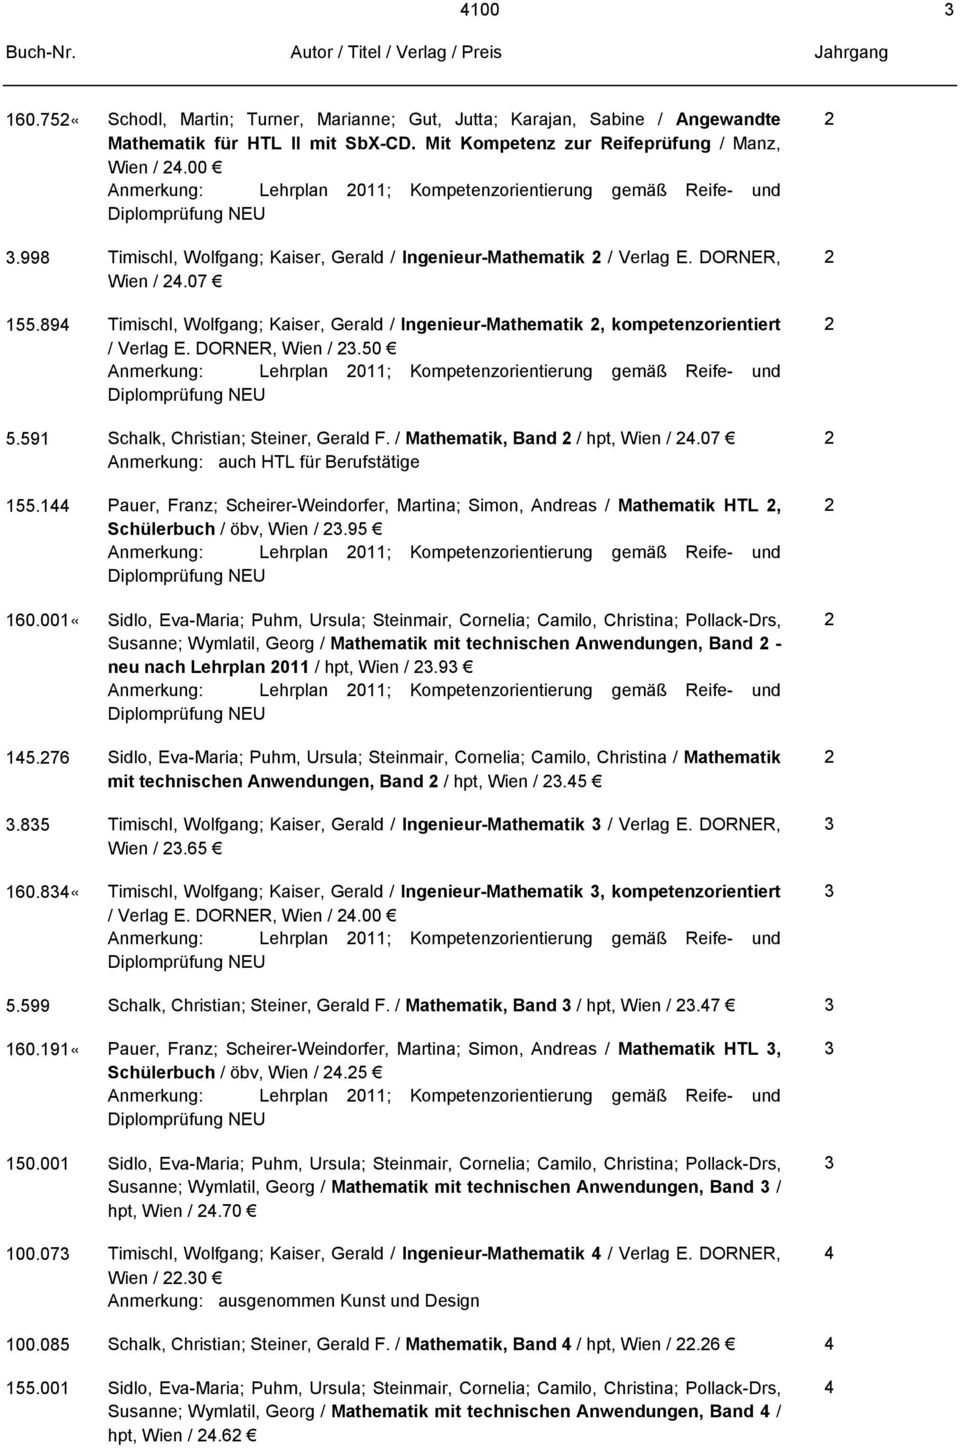 89 Timischl, Wolfgang; Kaiser, Gerald / Ingenieur-Mathematik, kompetenzorientiert / Verlag E. DORNER, Wien /.50 Anmerkung: Lehrplan 0; Kompetenzorientierung gemäß Reife- und 5.